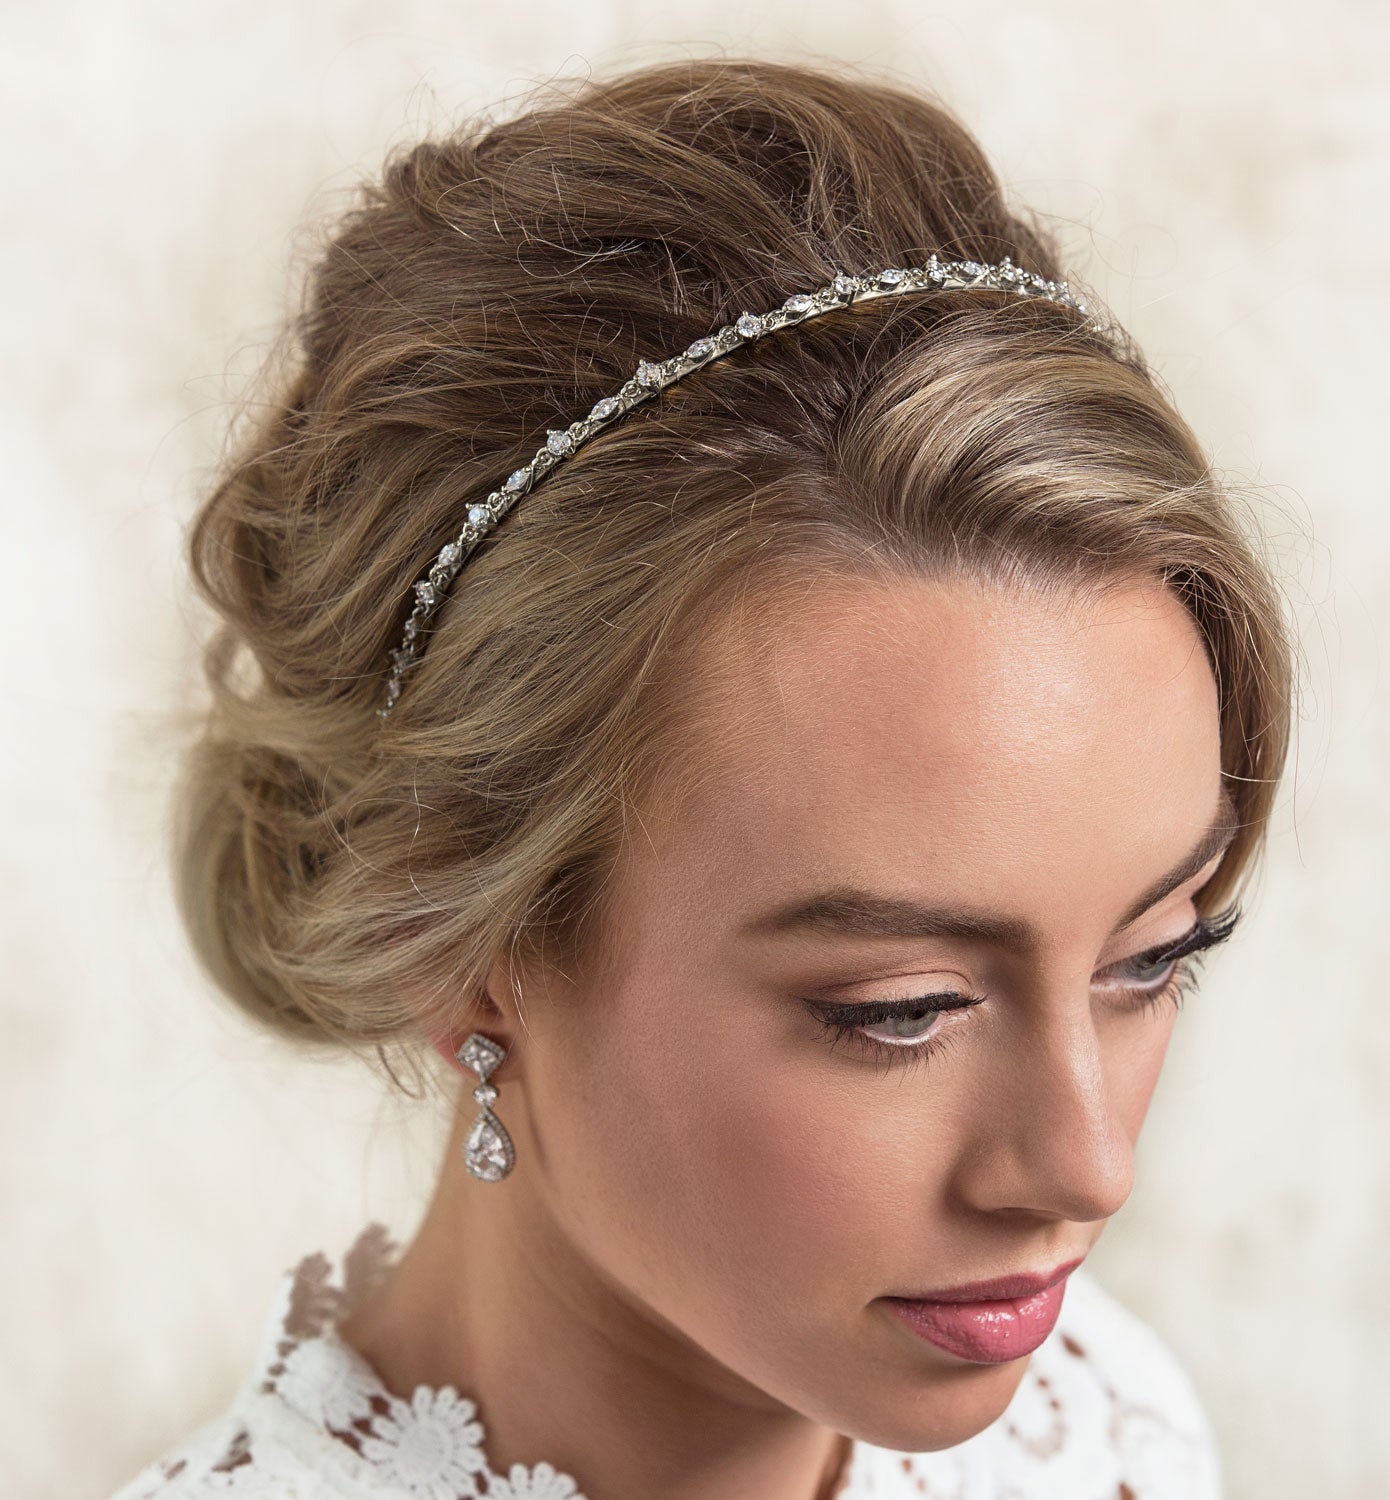 Bridal headpiece - pearl and lace wedding headband - Carmelina by Keza –  KEZANI JEWELLERY - designer bridal jewellery and wedding accessories